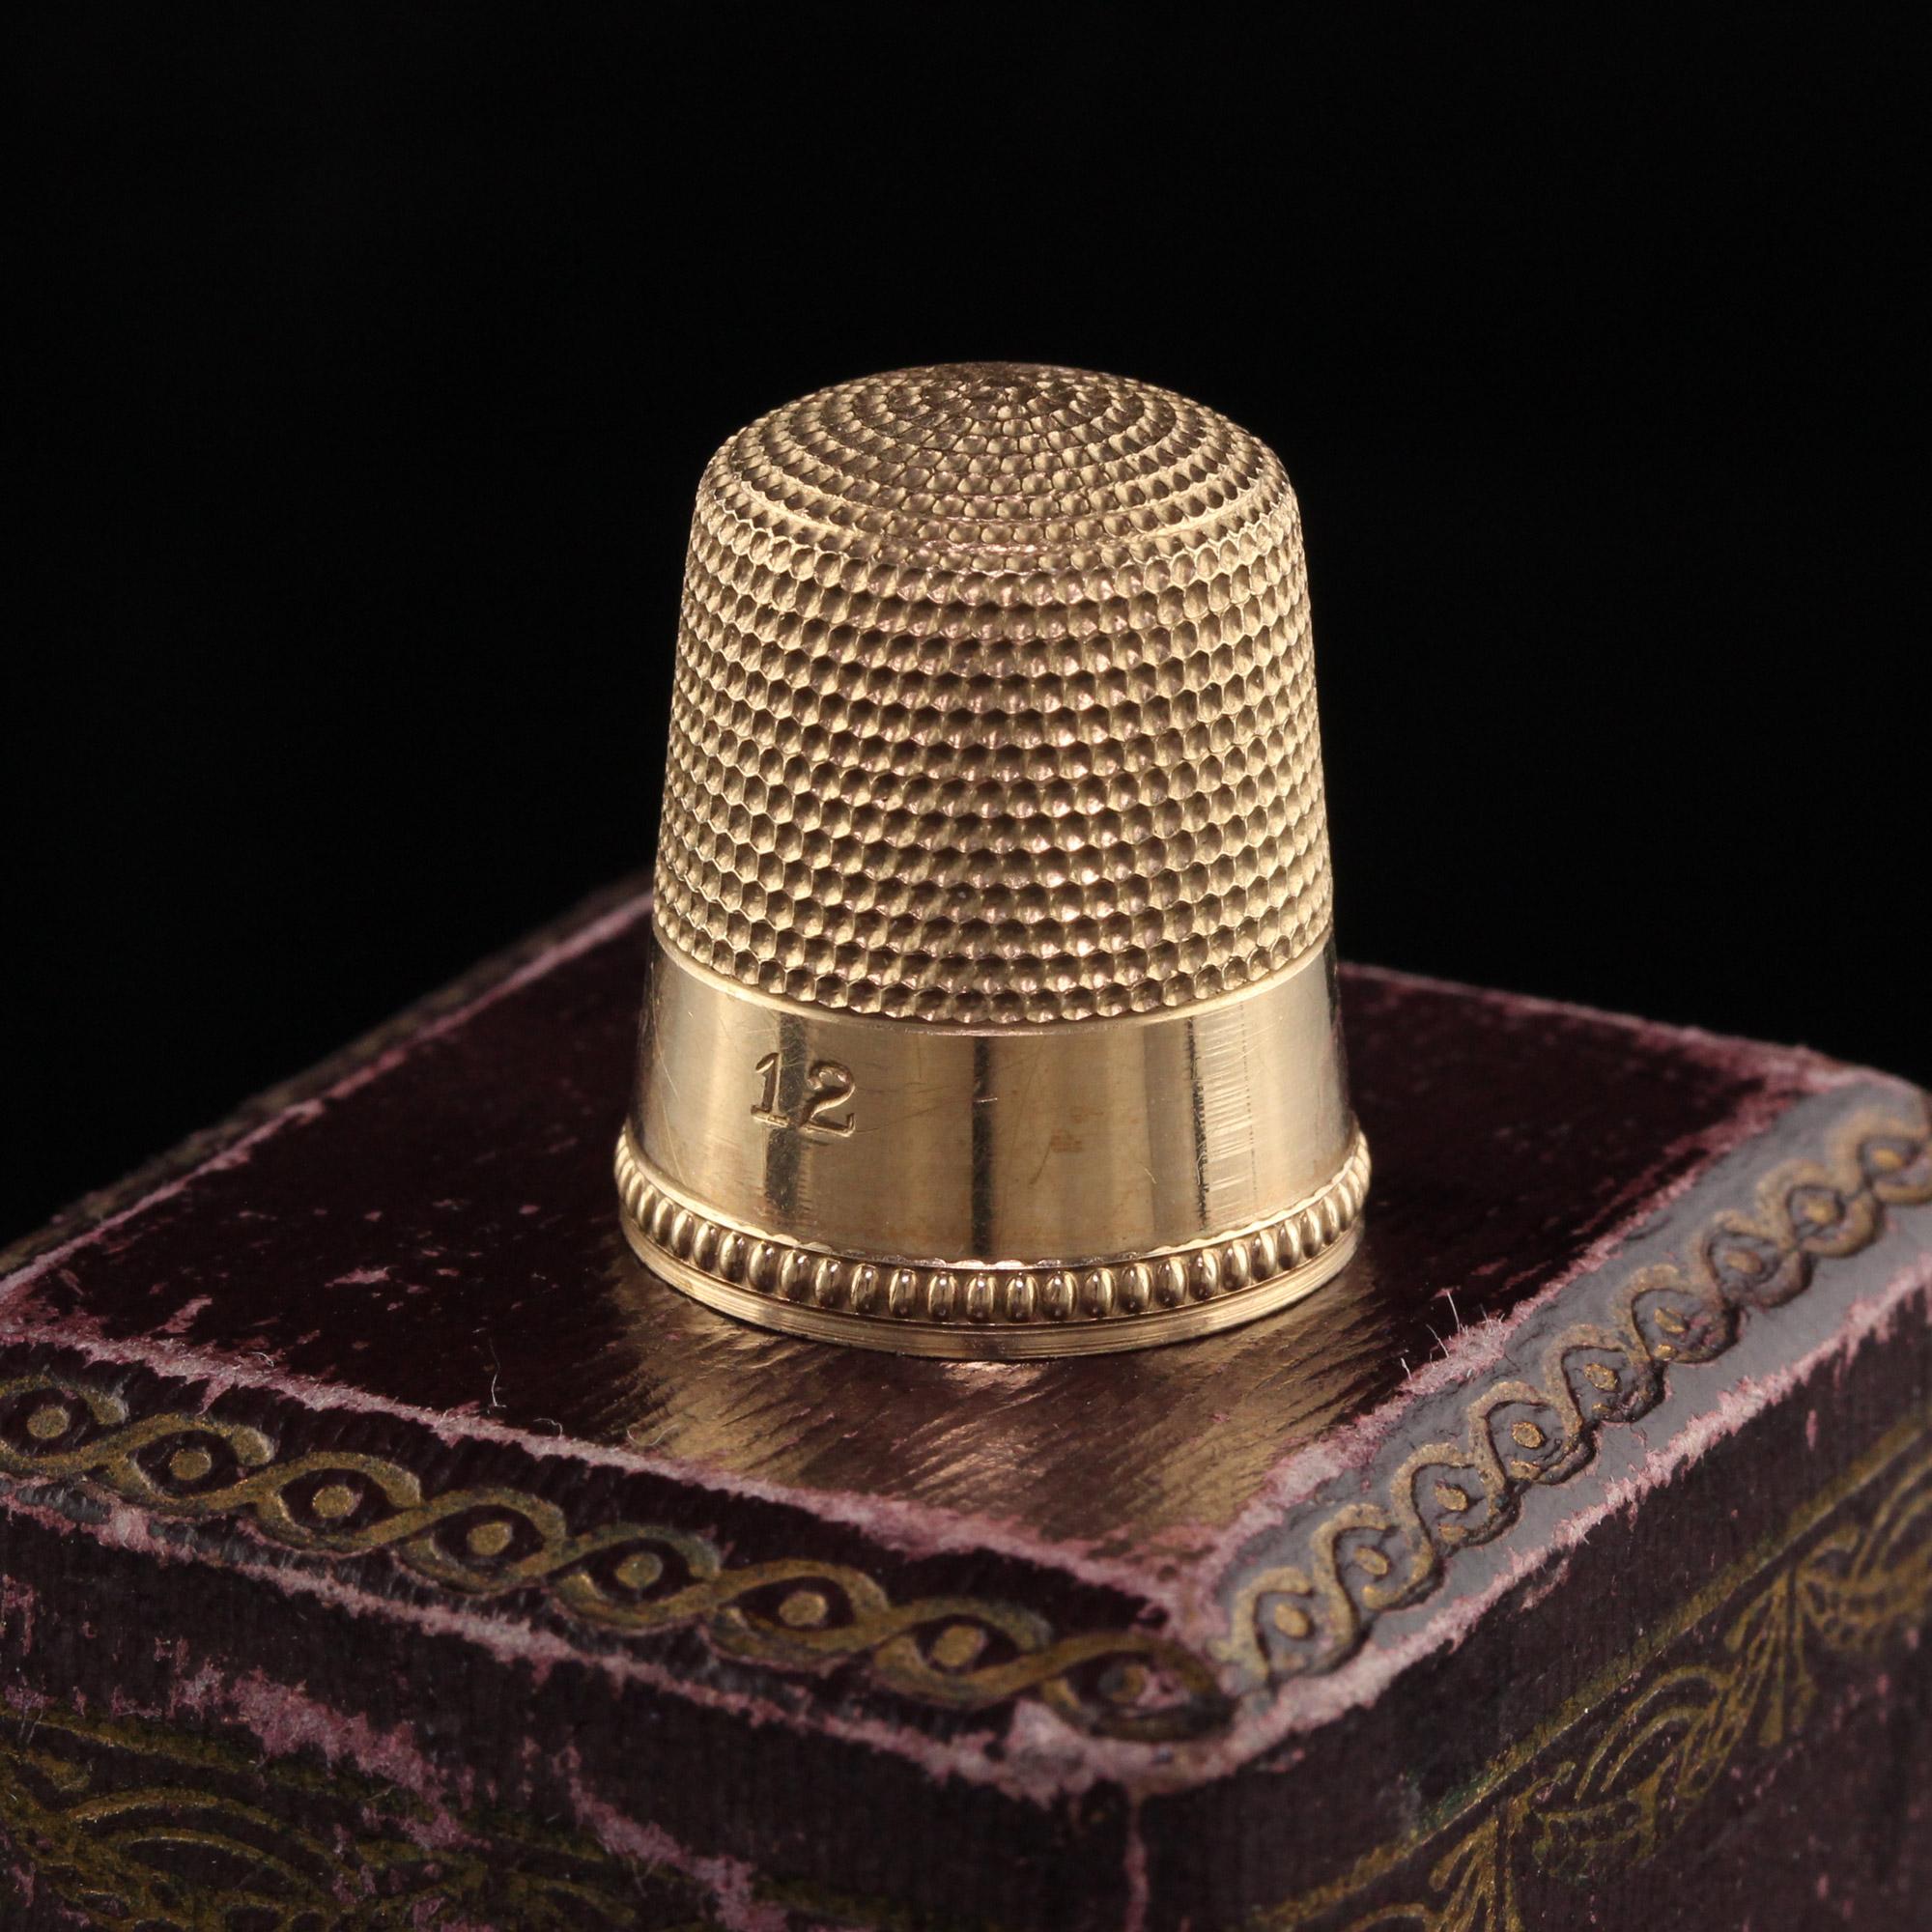 Schöne antike viktorianische 12K Gelbgold J. E. Caldwell Fingerhut. Dieses schöne Stück ist aus 12 Karat Gelbgold gefertigt. Dieser Fingerhut ist wunderschön graviert und in erstaunlichem Zustand.

Artikel #MISC0003

Metall: 12K Gelbgold

Gewicht: